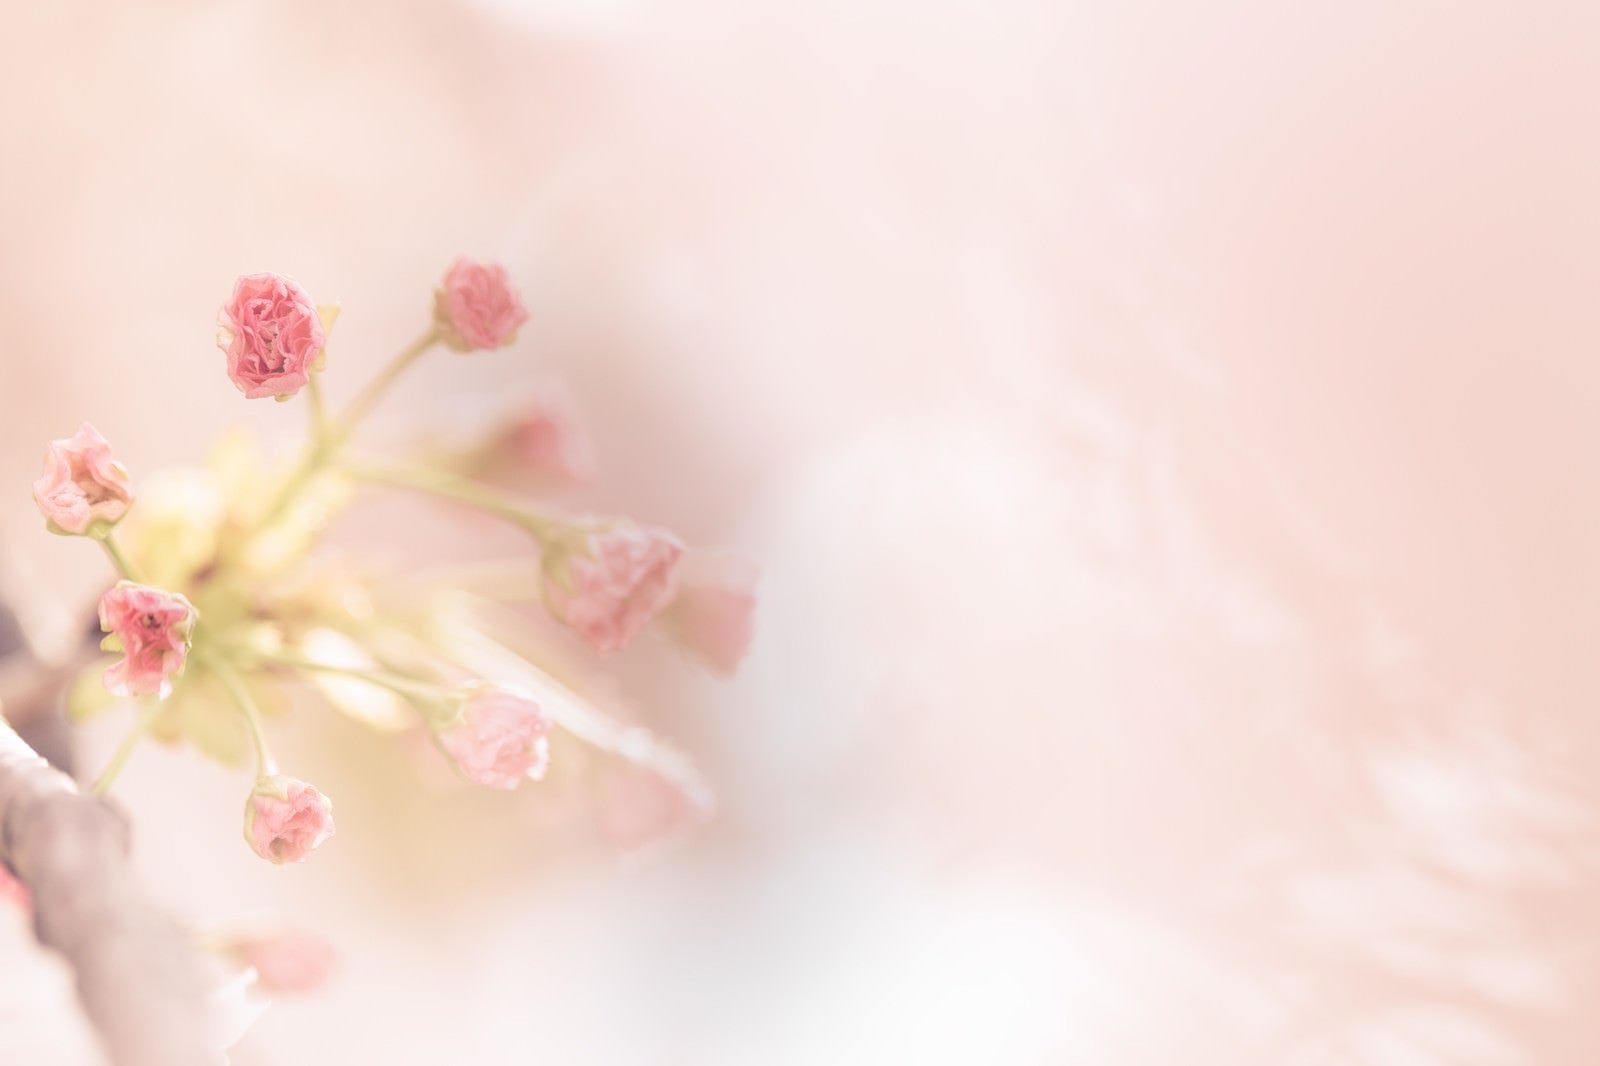 「春到来-桜のつぼみから花が咲く-」の写真